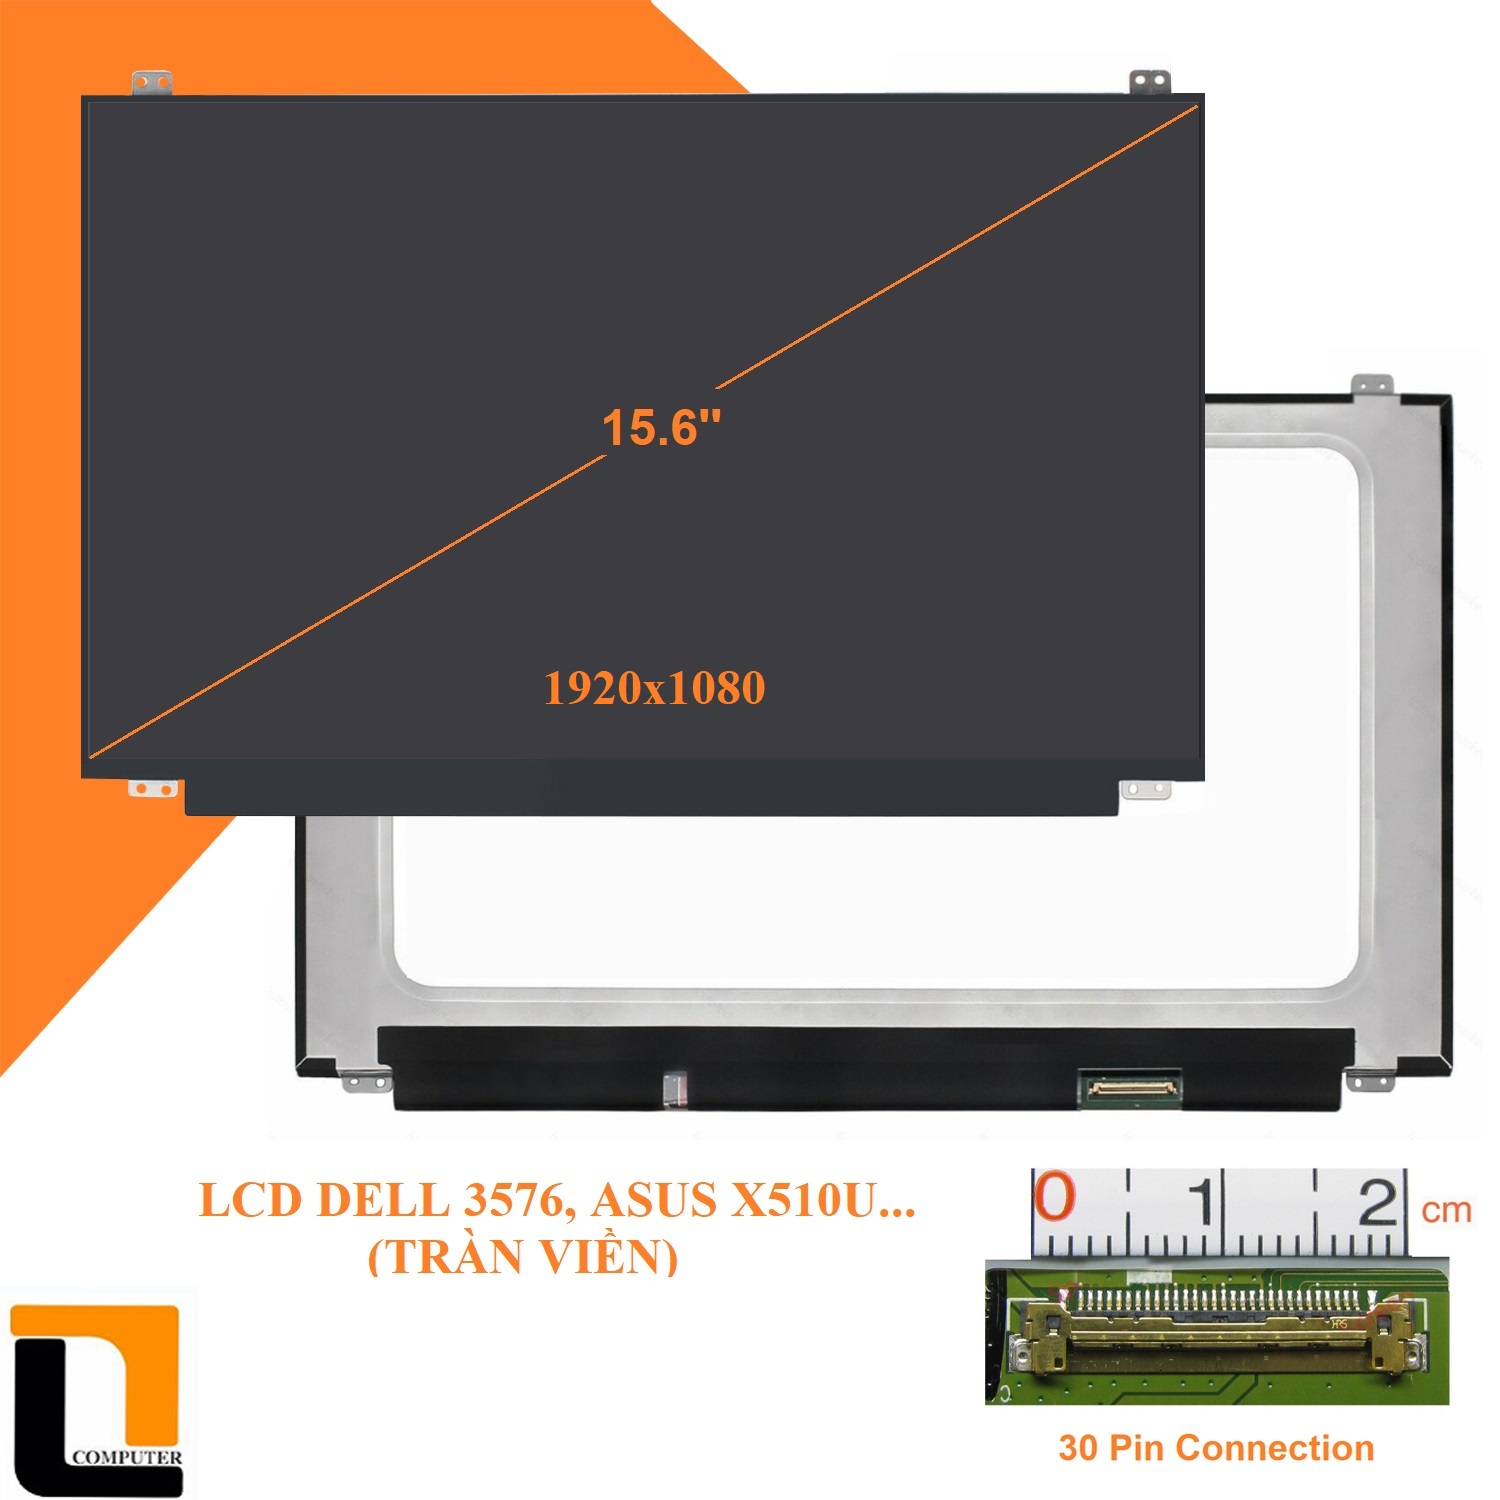 LCD 15.6 LED SLIM 40PIN FULL HD 144HZ